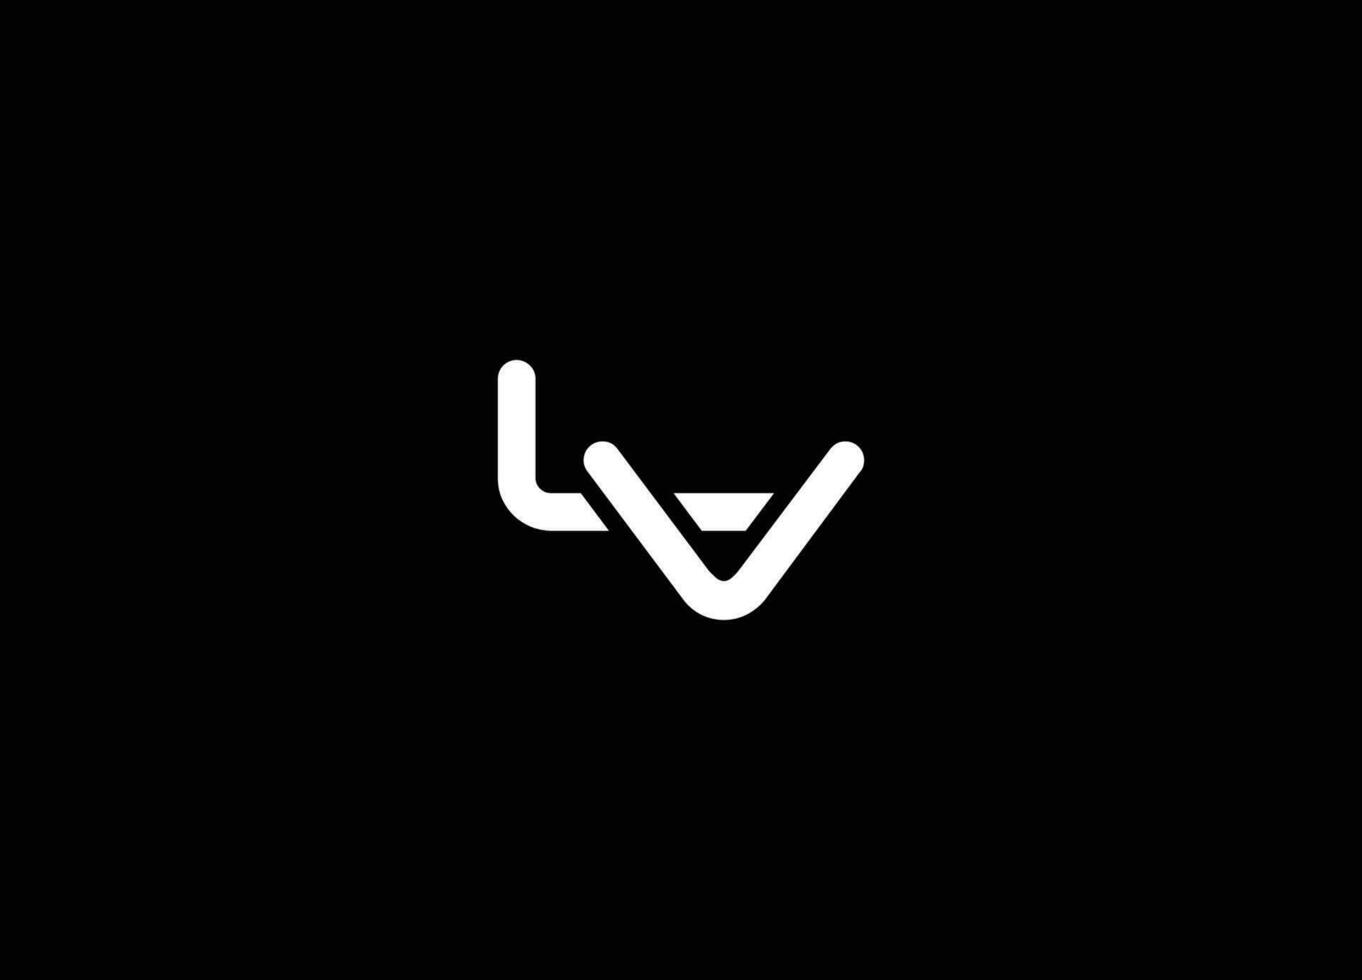 alfabeto letras iniciales monograma logo lv, lv inicial, lv carta. lv letra logo vector modelo. alfabeto lv, lv monograma, Arte línea, vector logo diseño, inicial logo